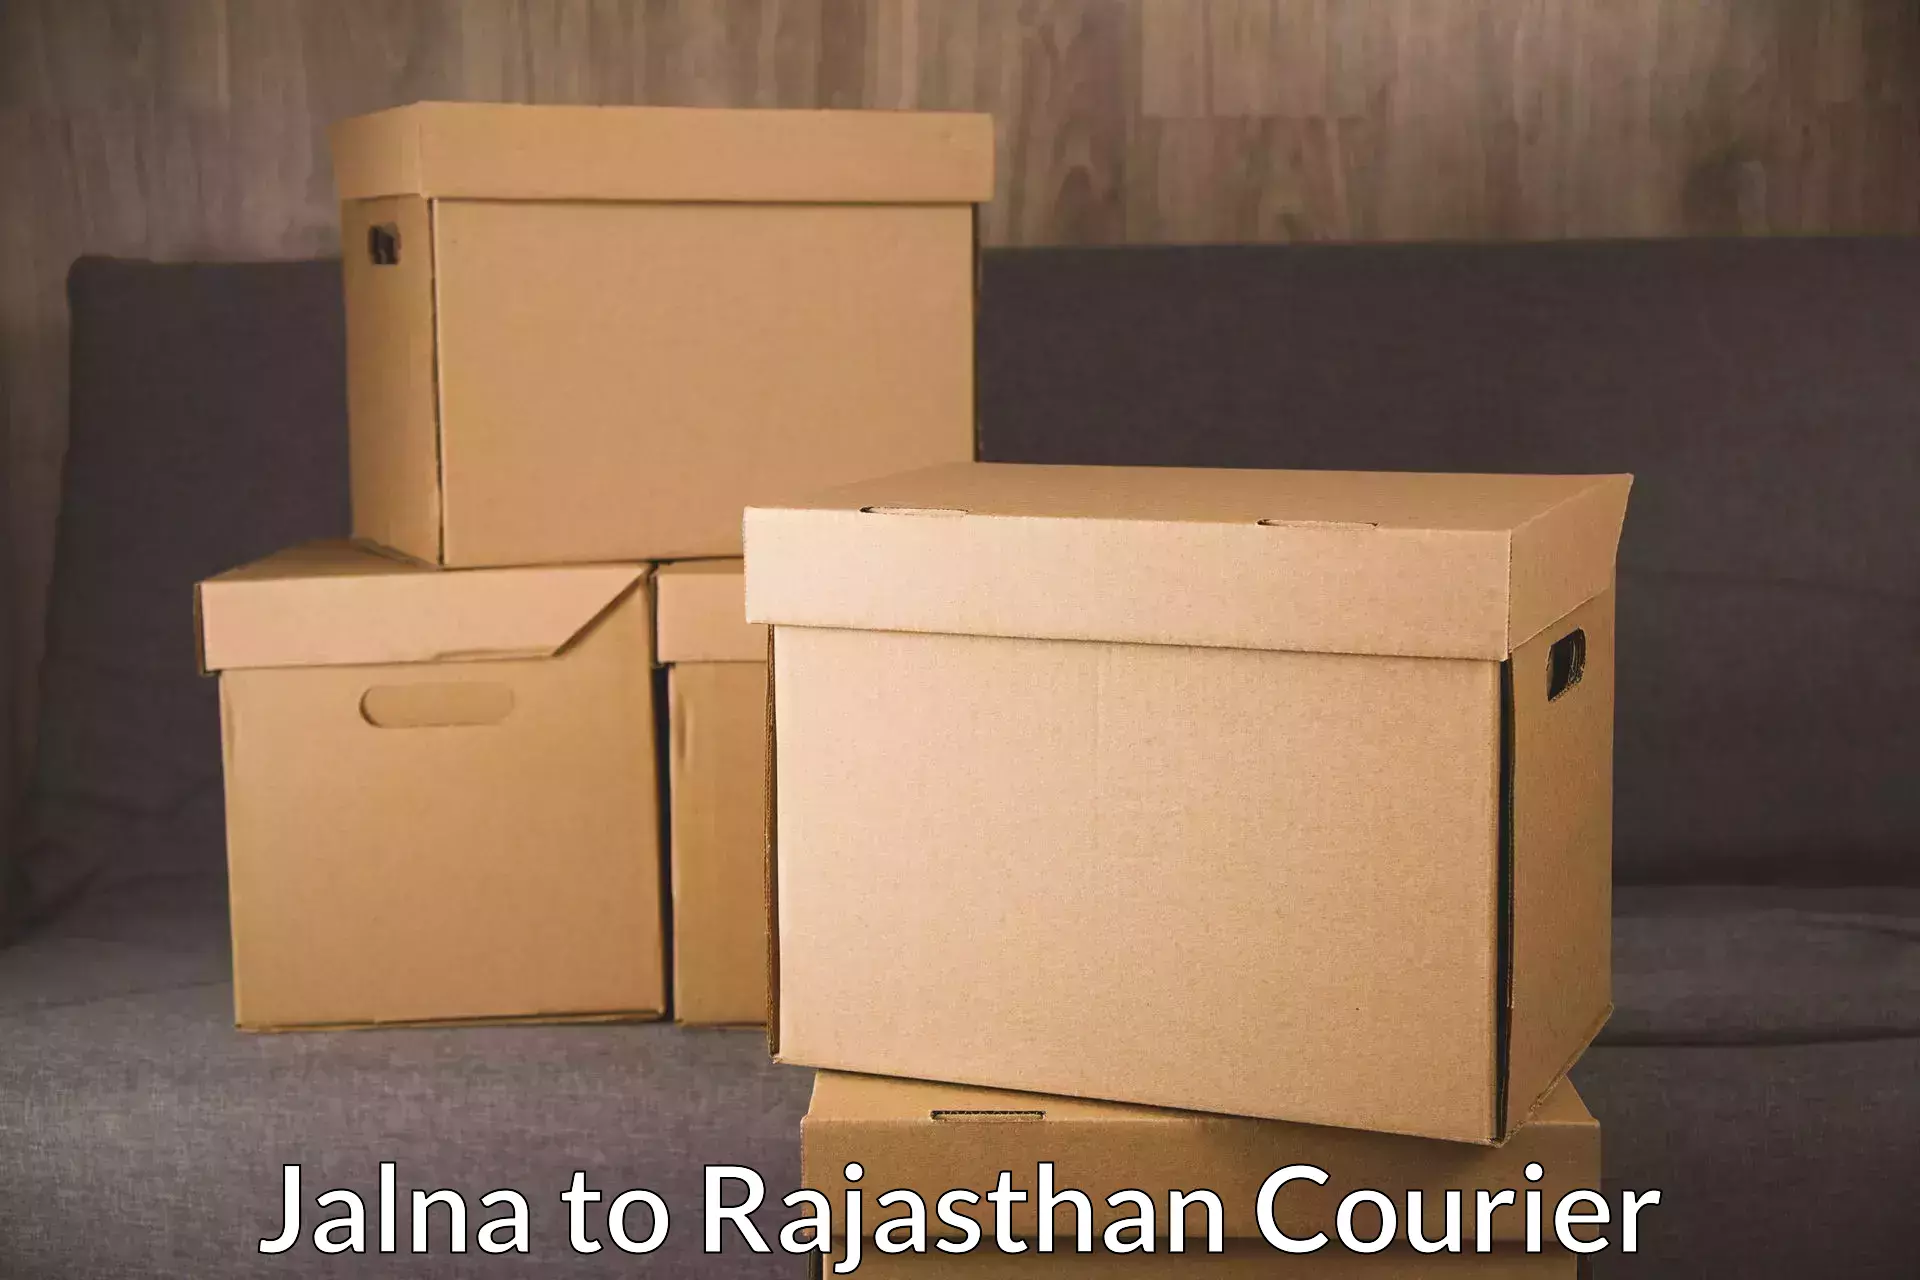 Efficient parcel tracking Jalna to Kalwar